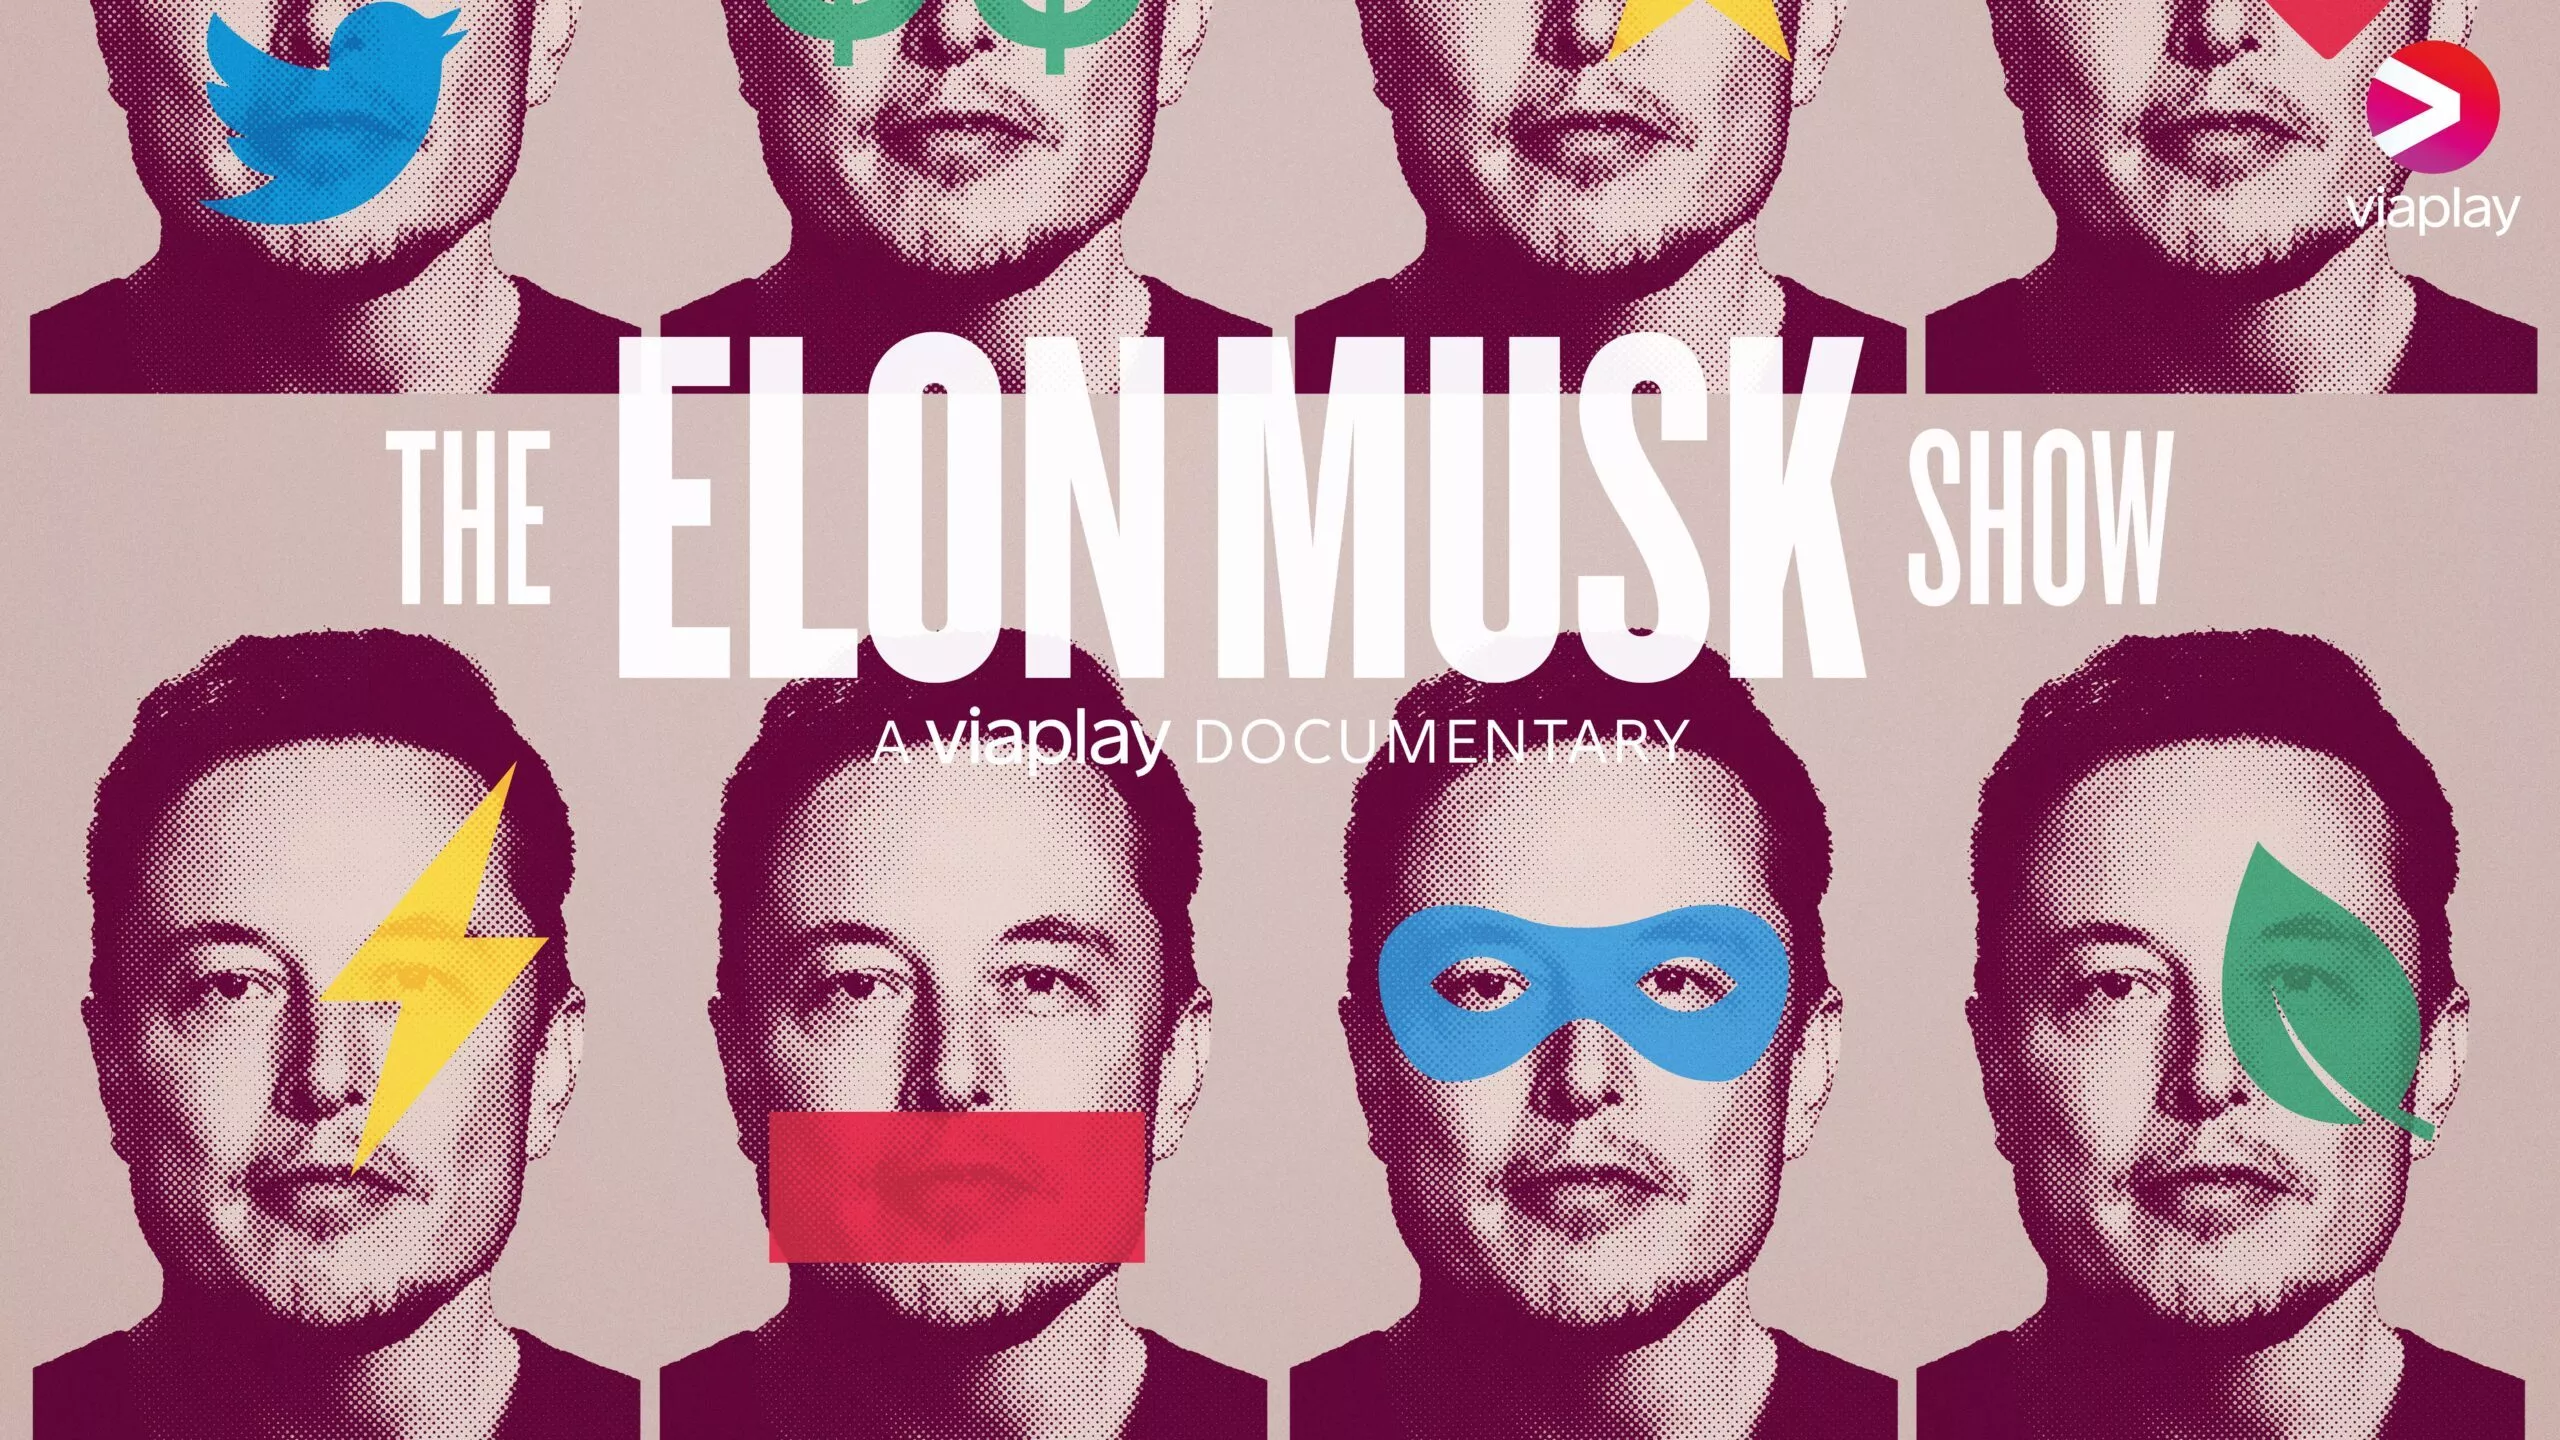 The Elon Musk Show | Trailer | A Viaplay Original